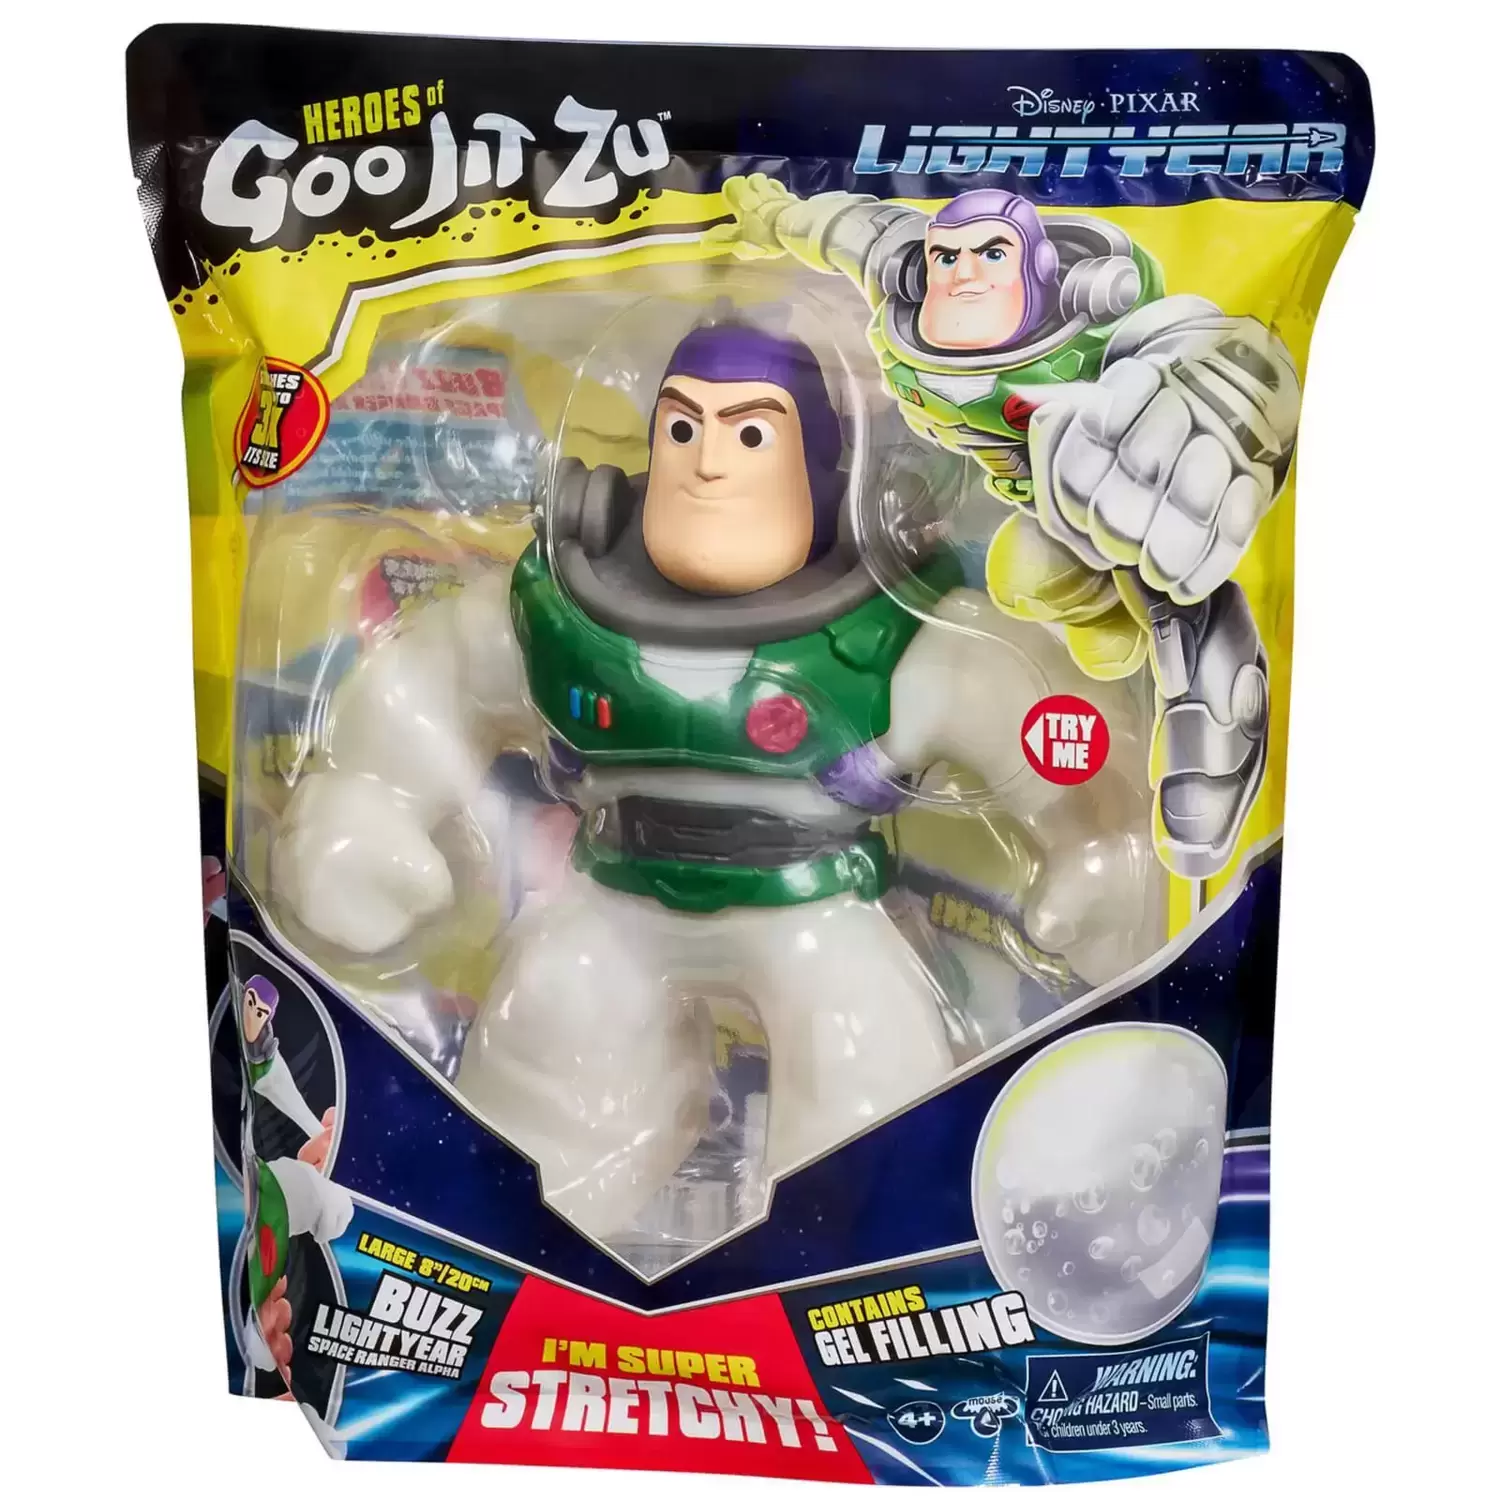 Heroes of Goo Jit Zu - Lightyear - Buzz Lightyear